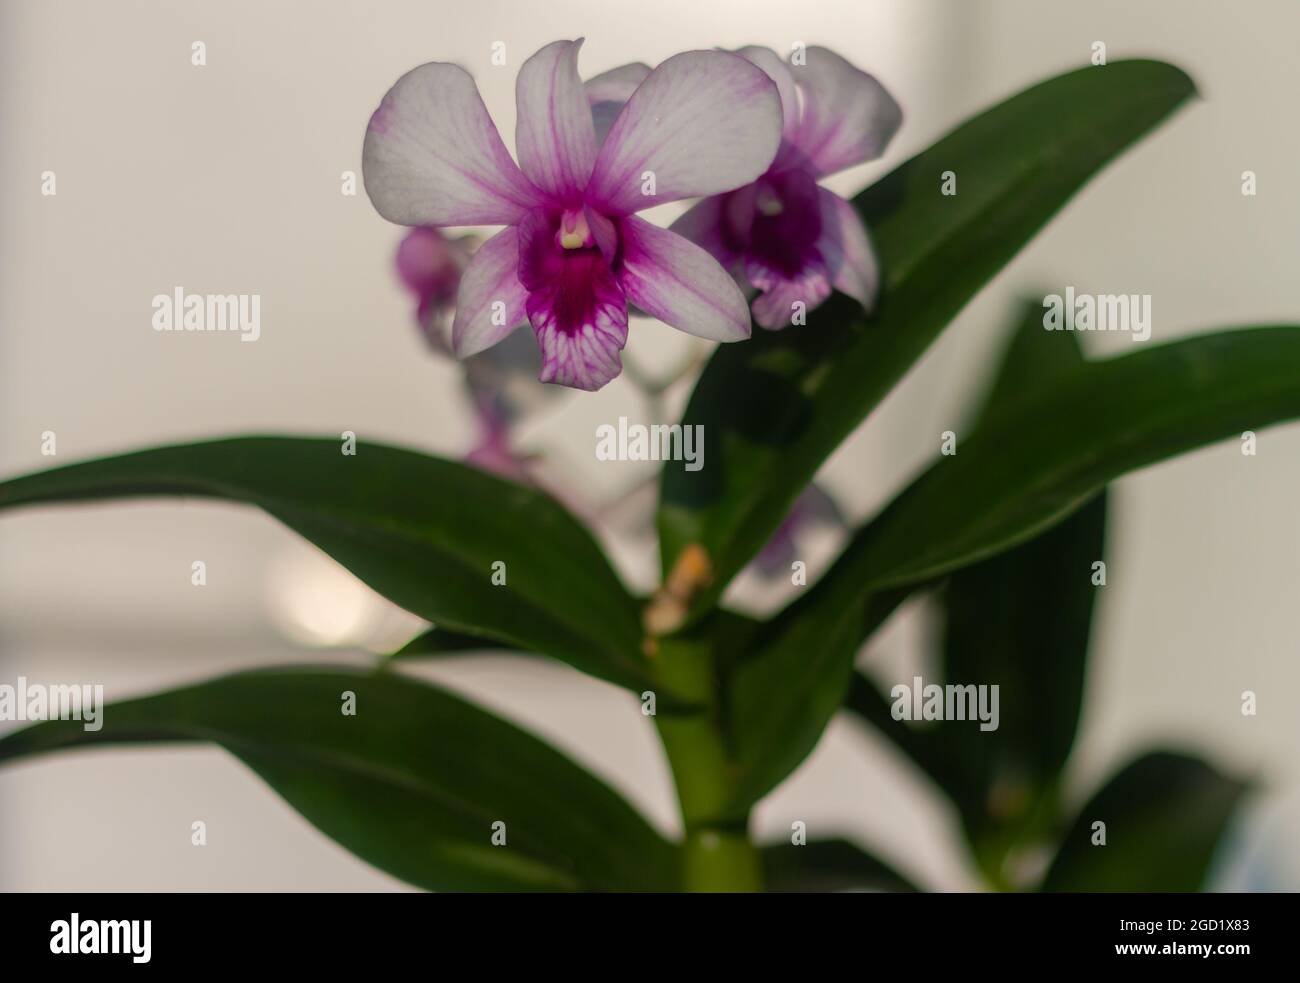 Las plantas de orquídeas florecen en blanco y púrpura Foto de stock